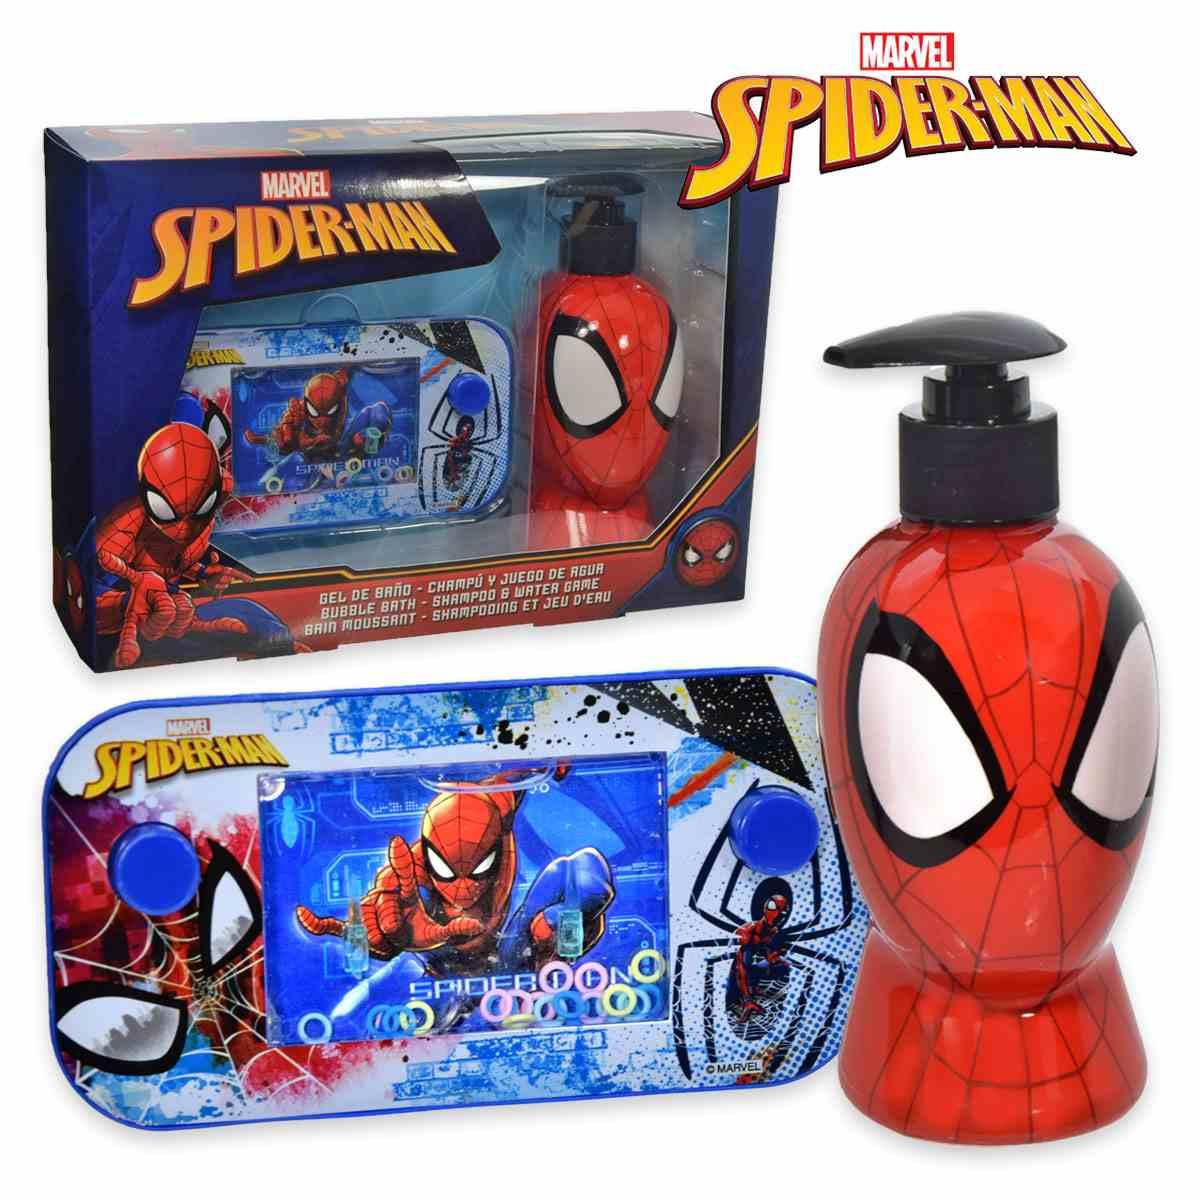 Spider-man confezione regalo